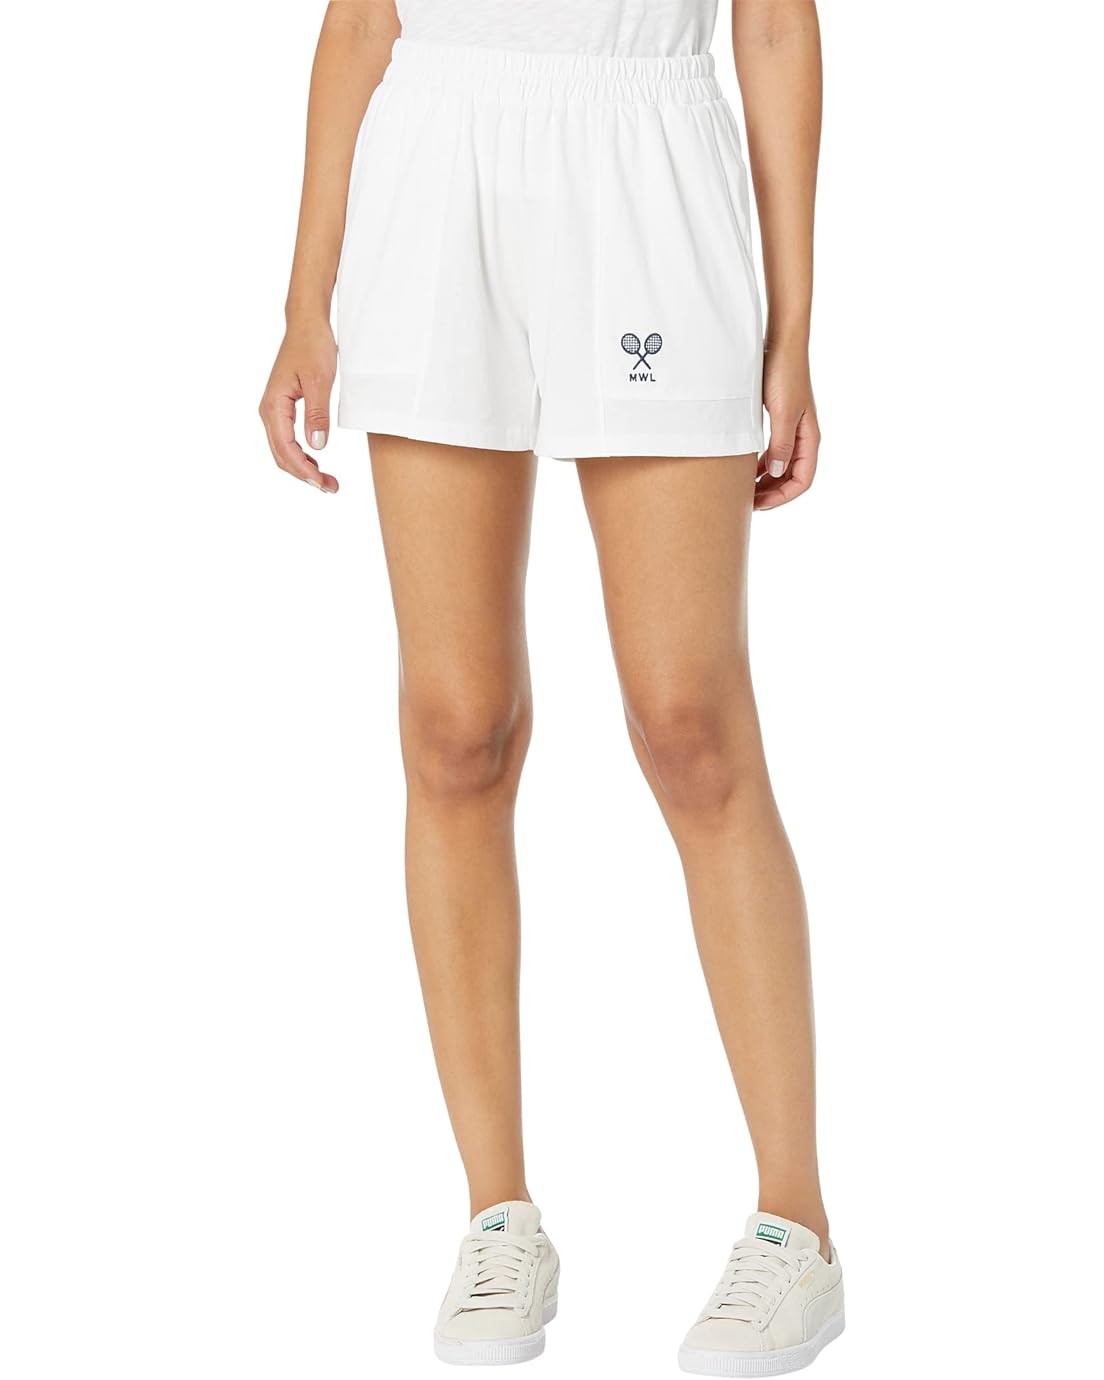 메이드웰 Madewell MWL Embroidered Tennis Pull-On Seamed Shorts